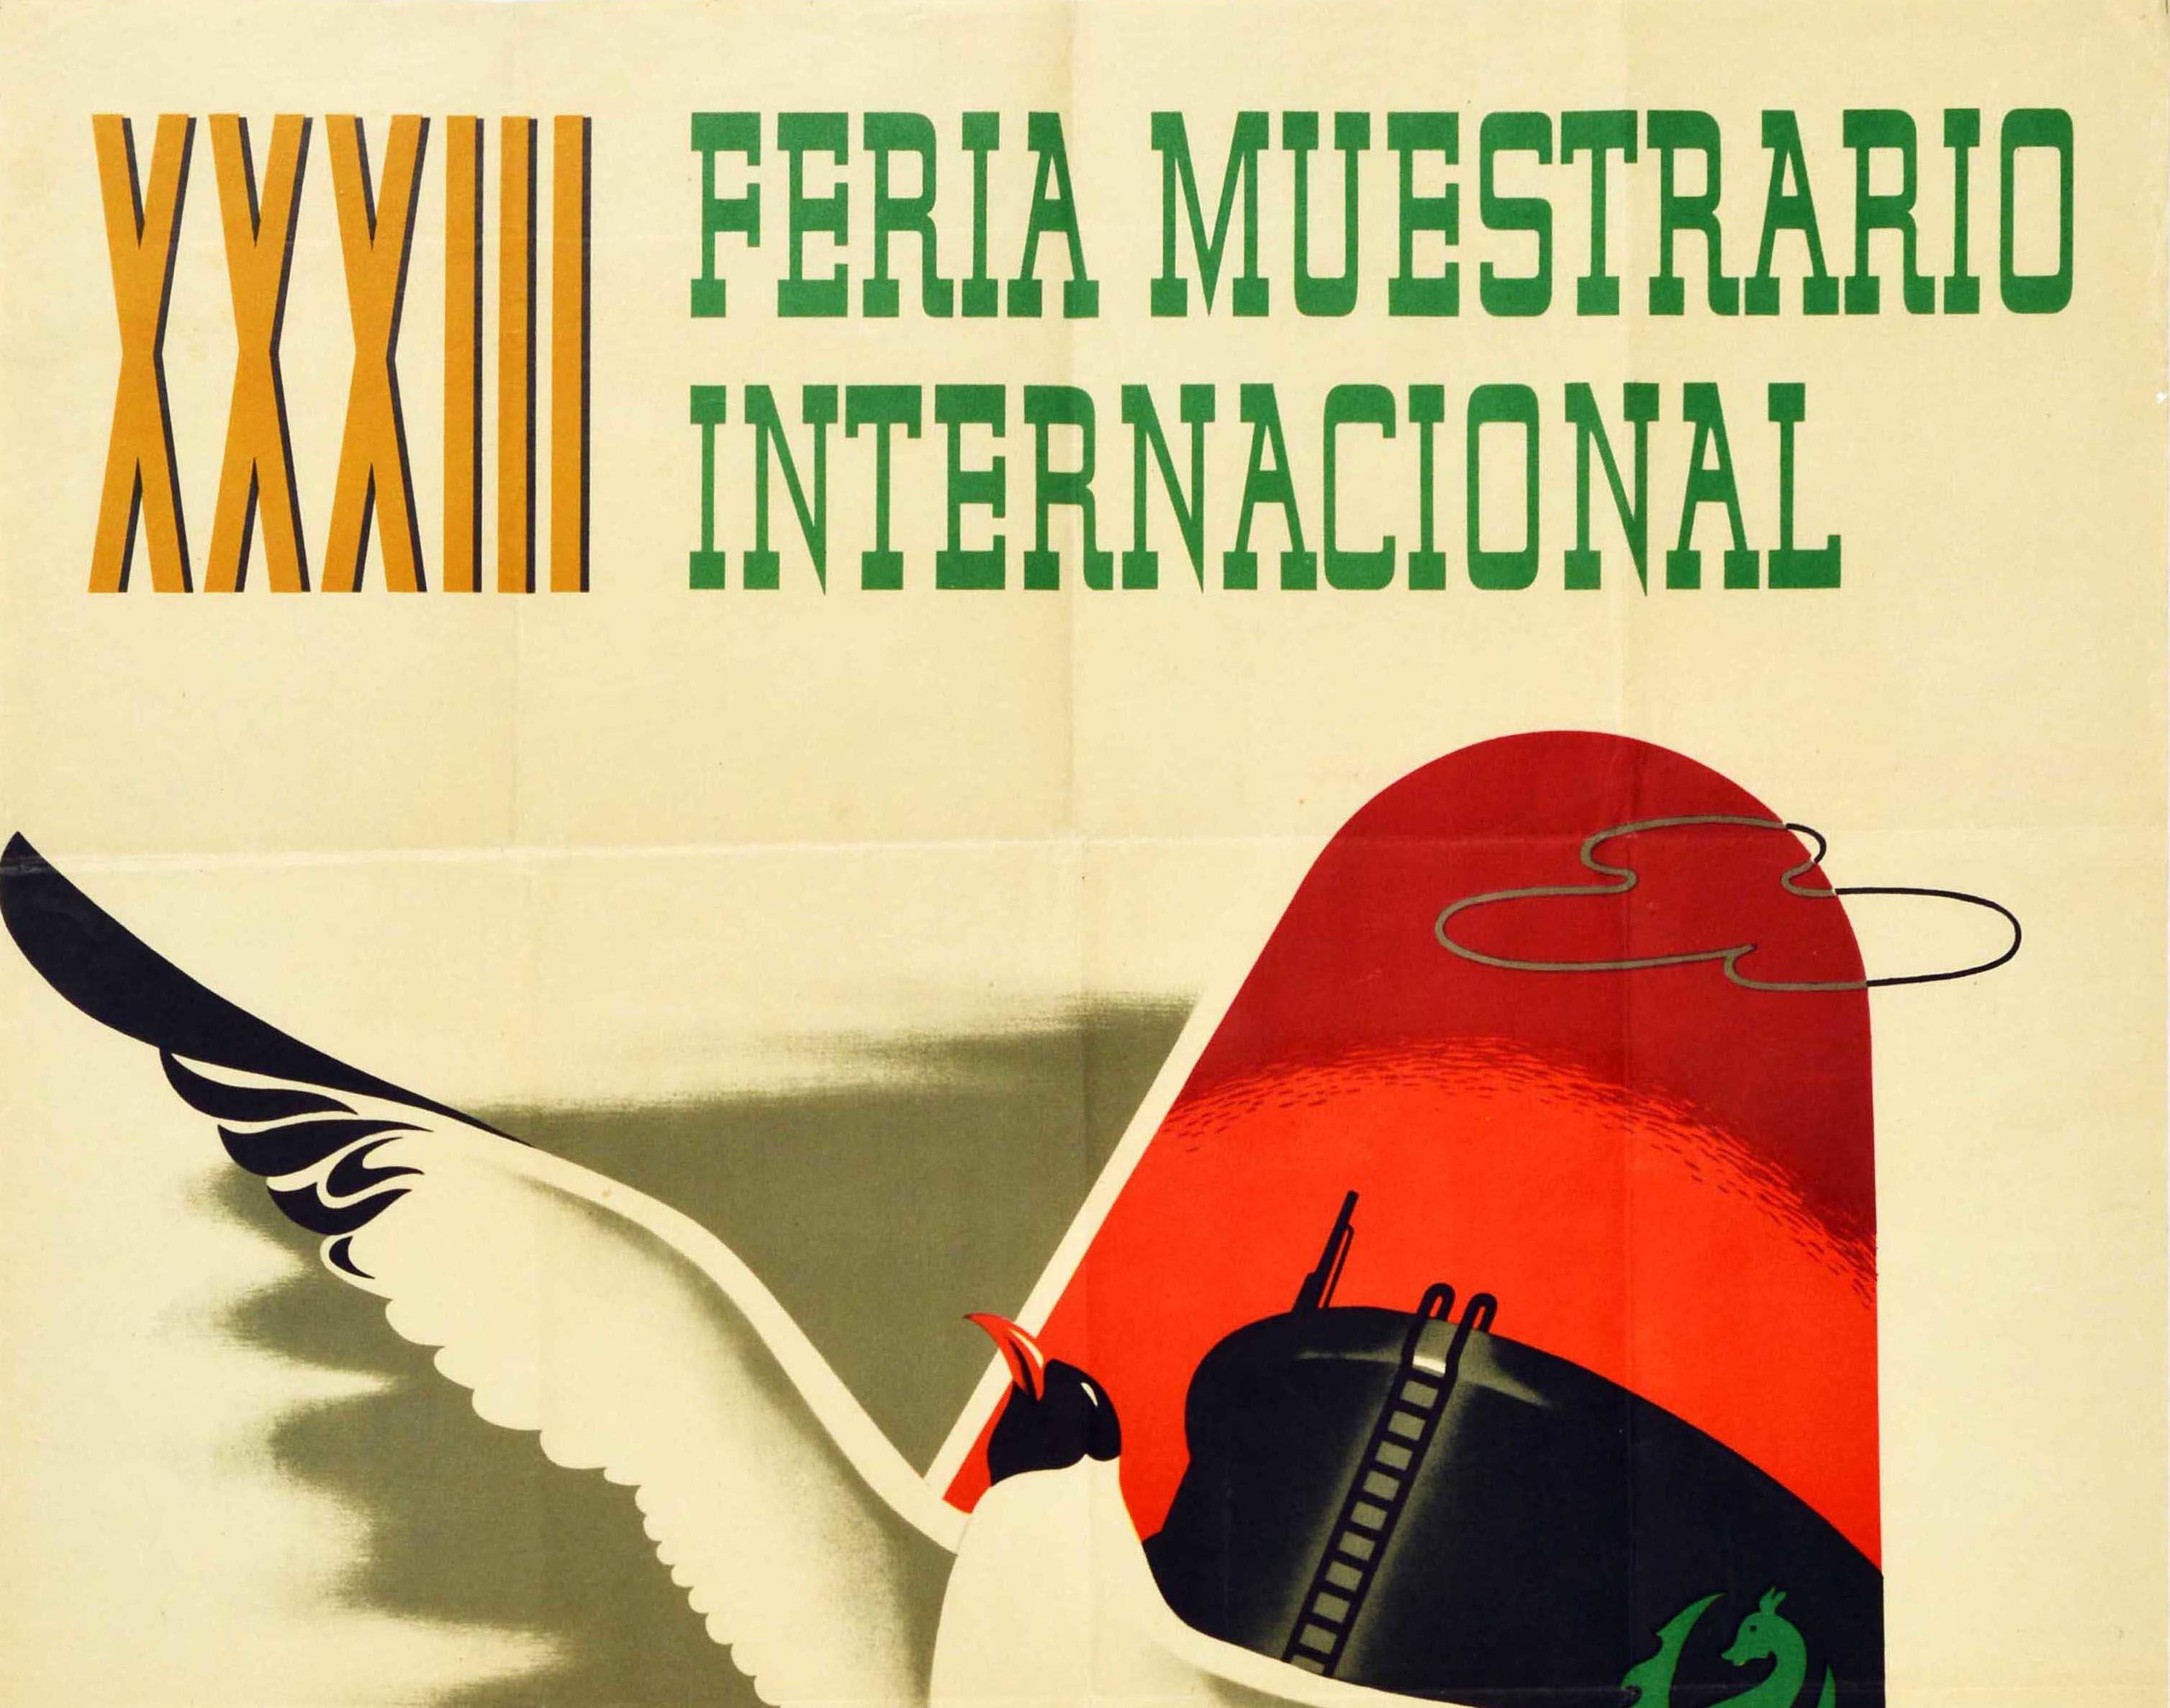 Original-Vintage-Werbeplakat Feria Muestrario Trade Fair Valencia, Spanien (Orange), Print, von Ross